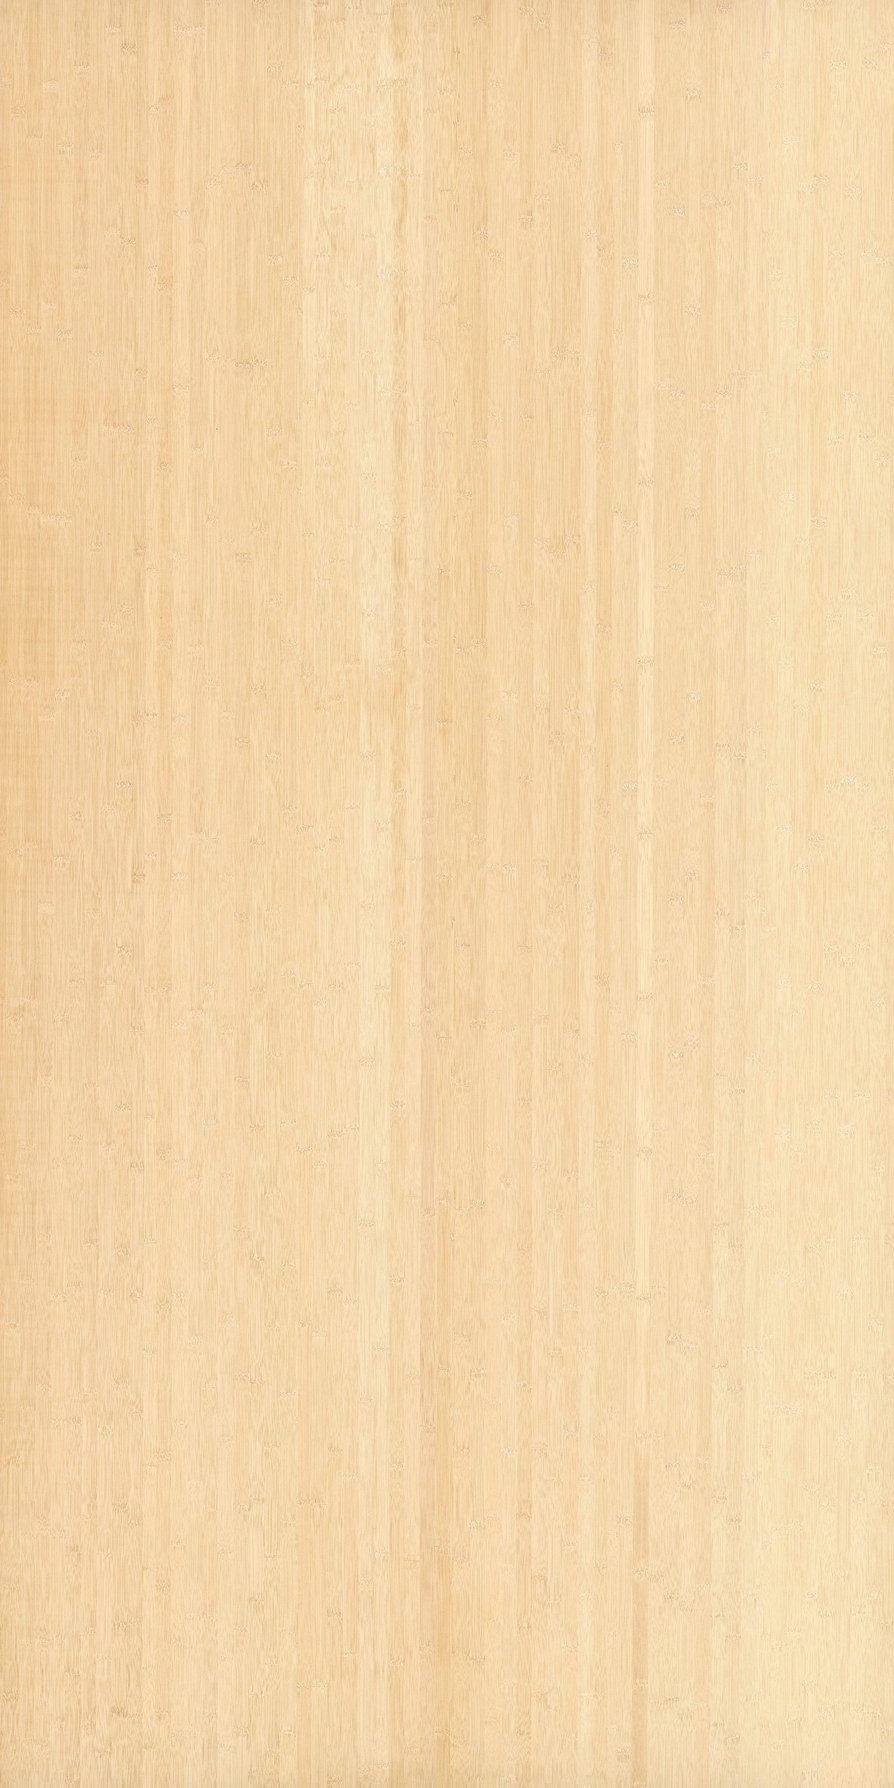 Bamboo Natural veneer